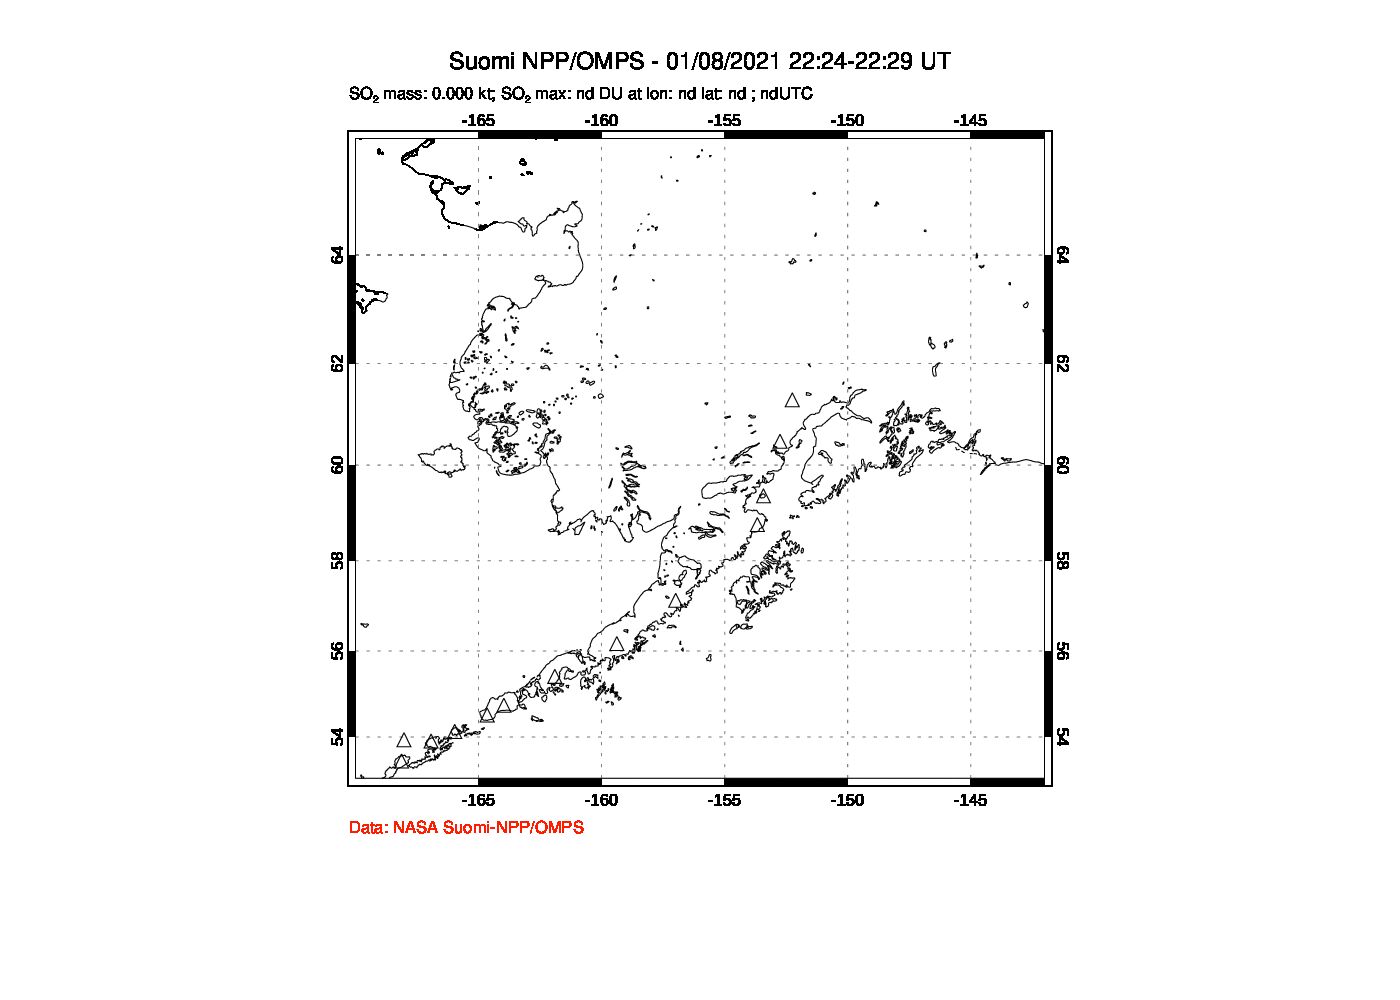 A sulfur dioxide image over Alaska, USA on Jan 08, 2021.